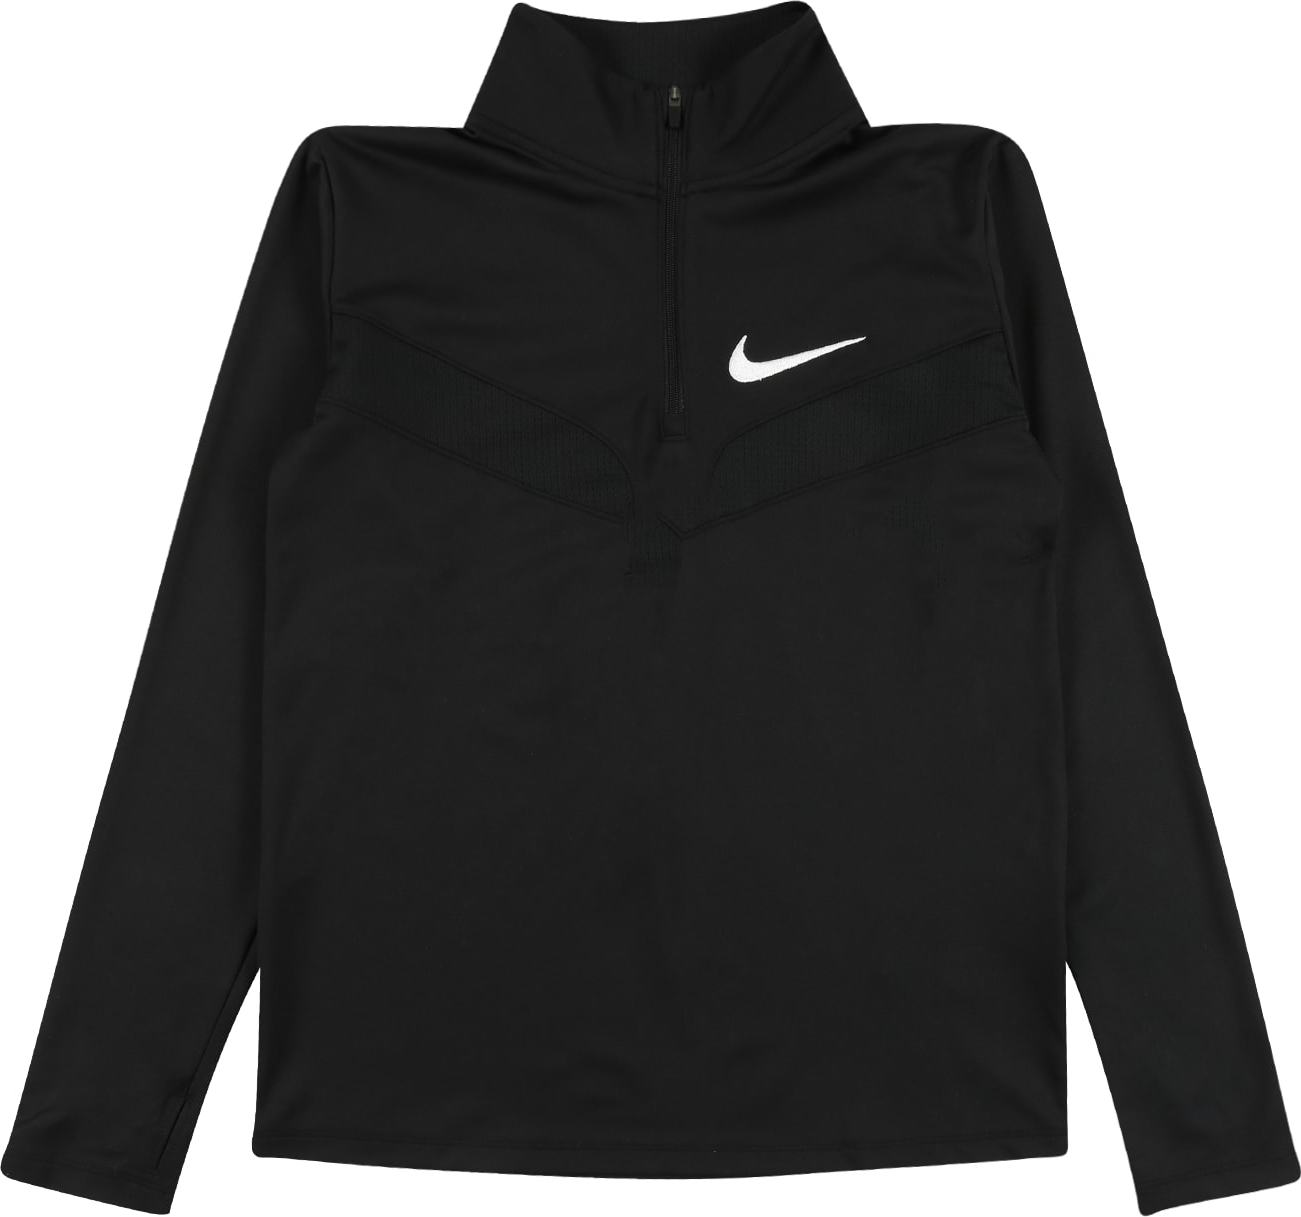 Funkční tričko Nike černá / bílá